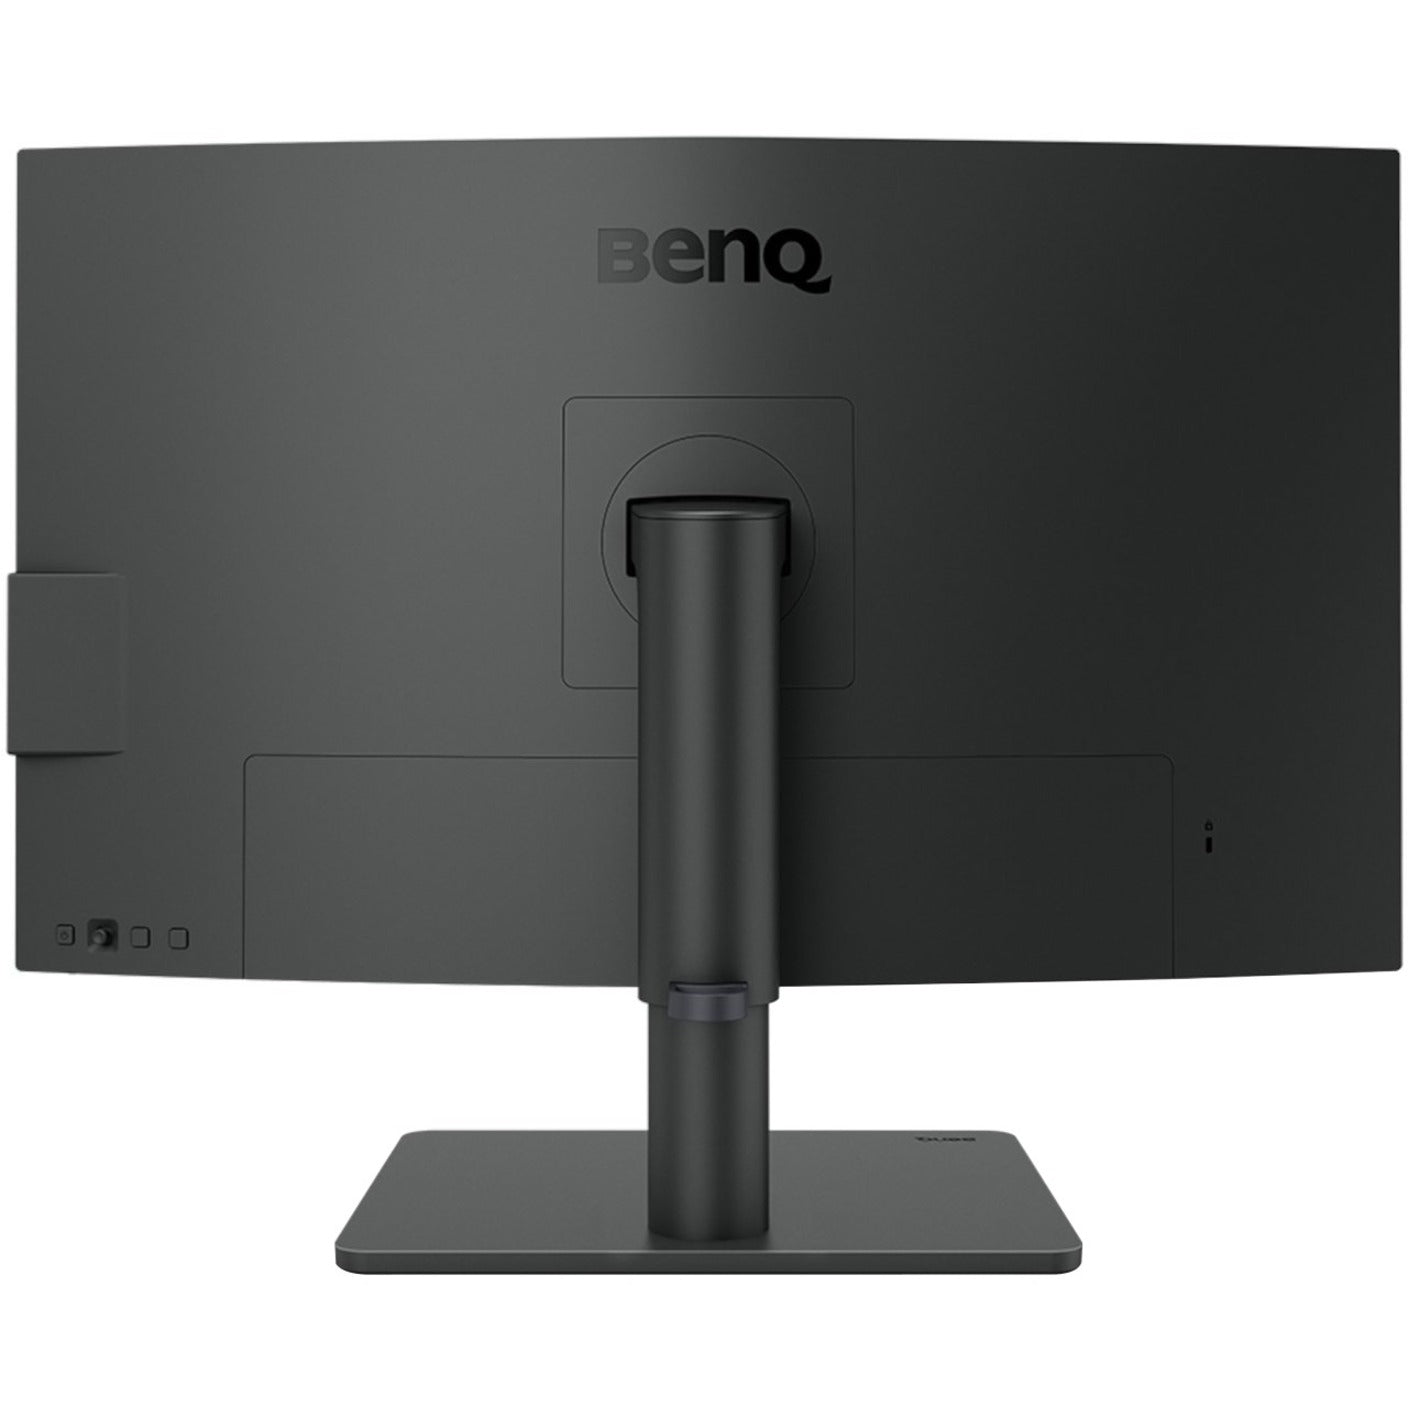 BenQ PD2705U 27" 4K UHD LCD Monitor - 16:9, 99% Rec. 709, 99% sRGB, FreeSync